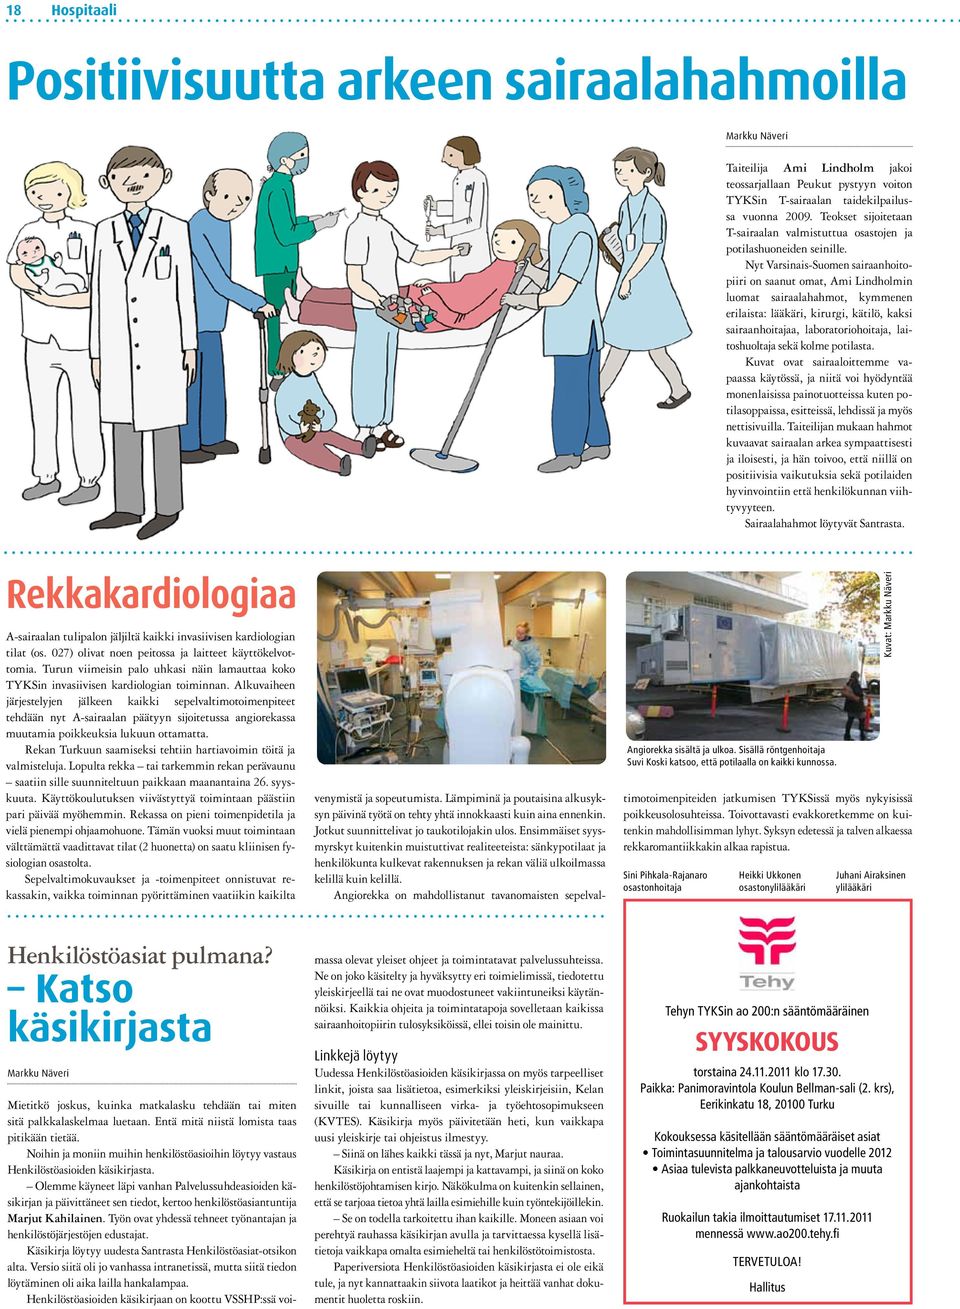 Nyt Varsinais-Suomen sairaanhoitopiiri on saanut omat, Ami Lindholmin luomat sairaalahahmot, kymmenen erilaista: lääkäri, kirurgi, kätilö, kaksi sairaanhoitajaa, laboratoriohoitaja, laitoshuoltaja